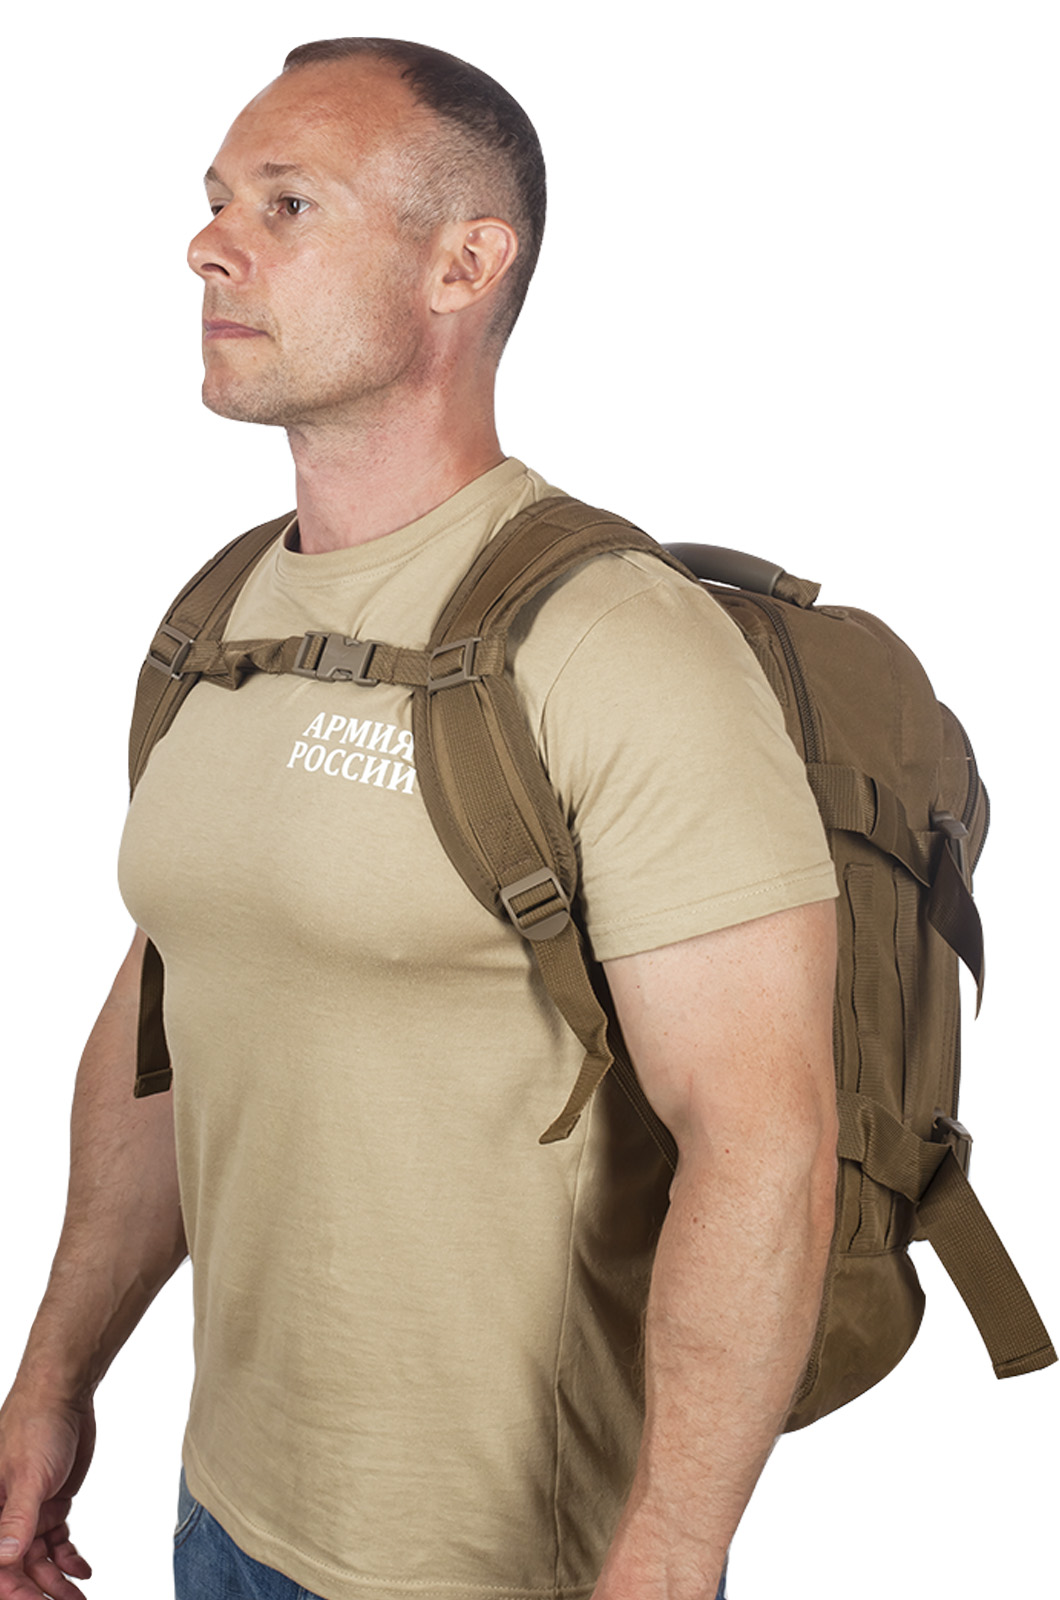 Комфортный рюкзак для мужчины с нашивкой Лучший Охотник 